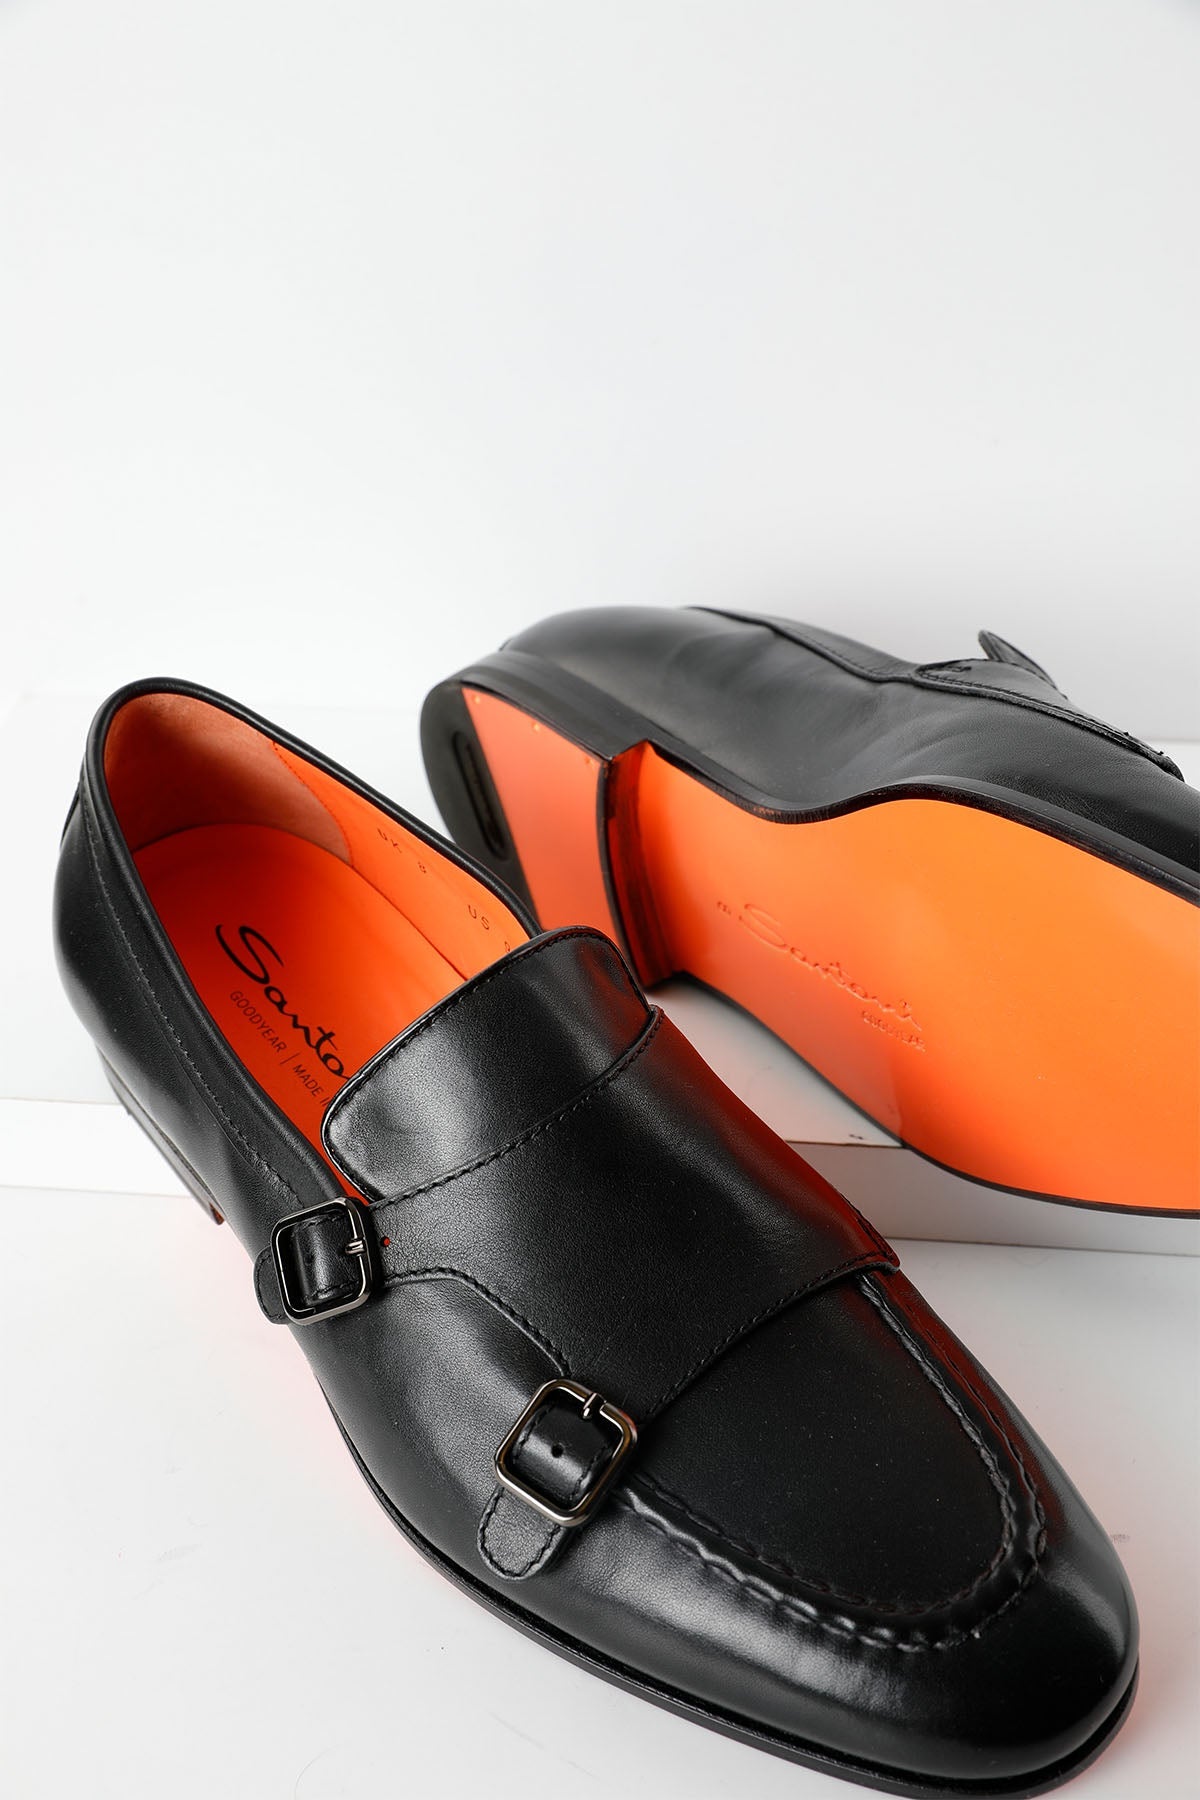 Santoni Goodyear Taban Çift Tokalı Deri Loafer Ayakkabı